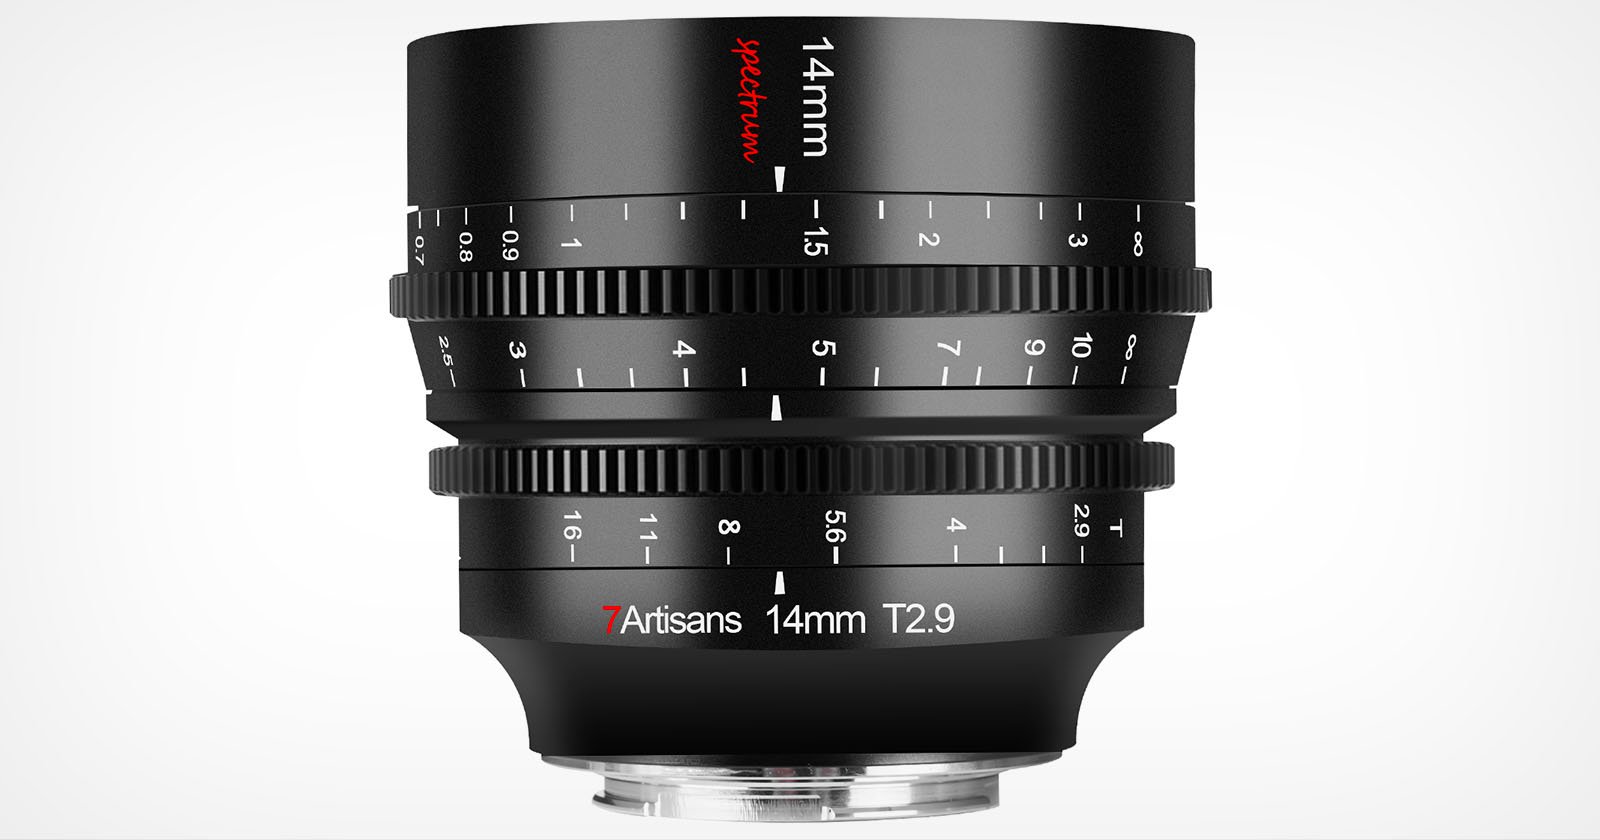 7artisans 14mm T2.9 is an Ultra-Wide Cine Lens for Full-Frame Cameras